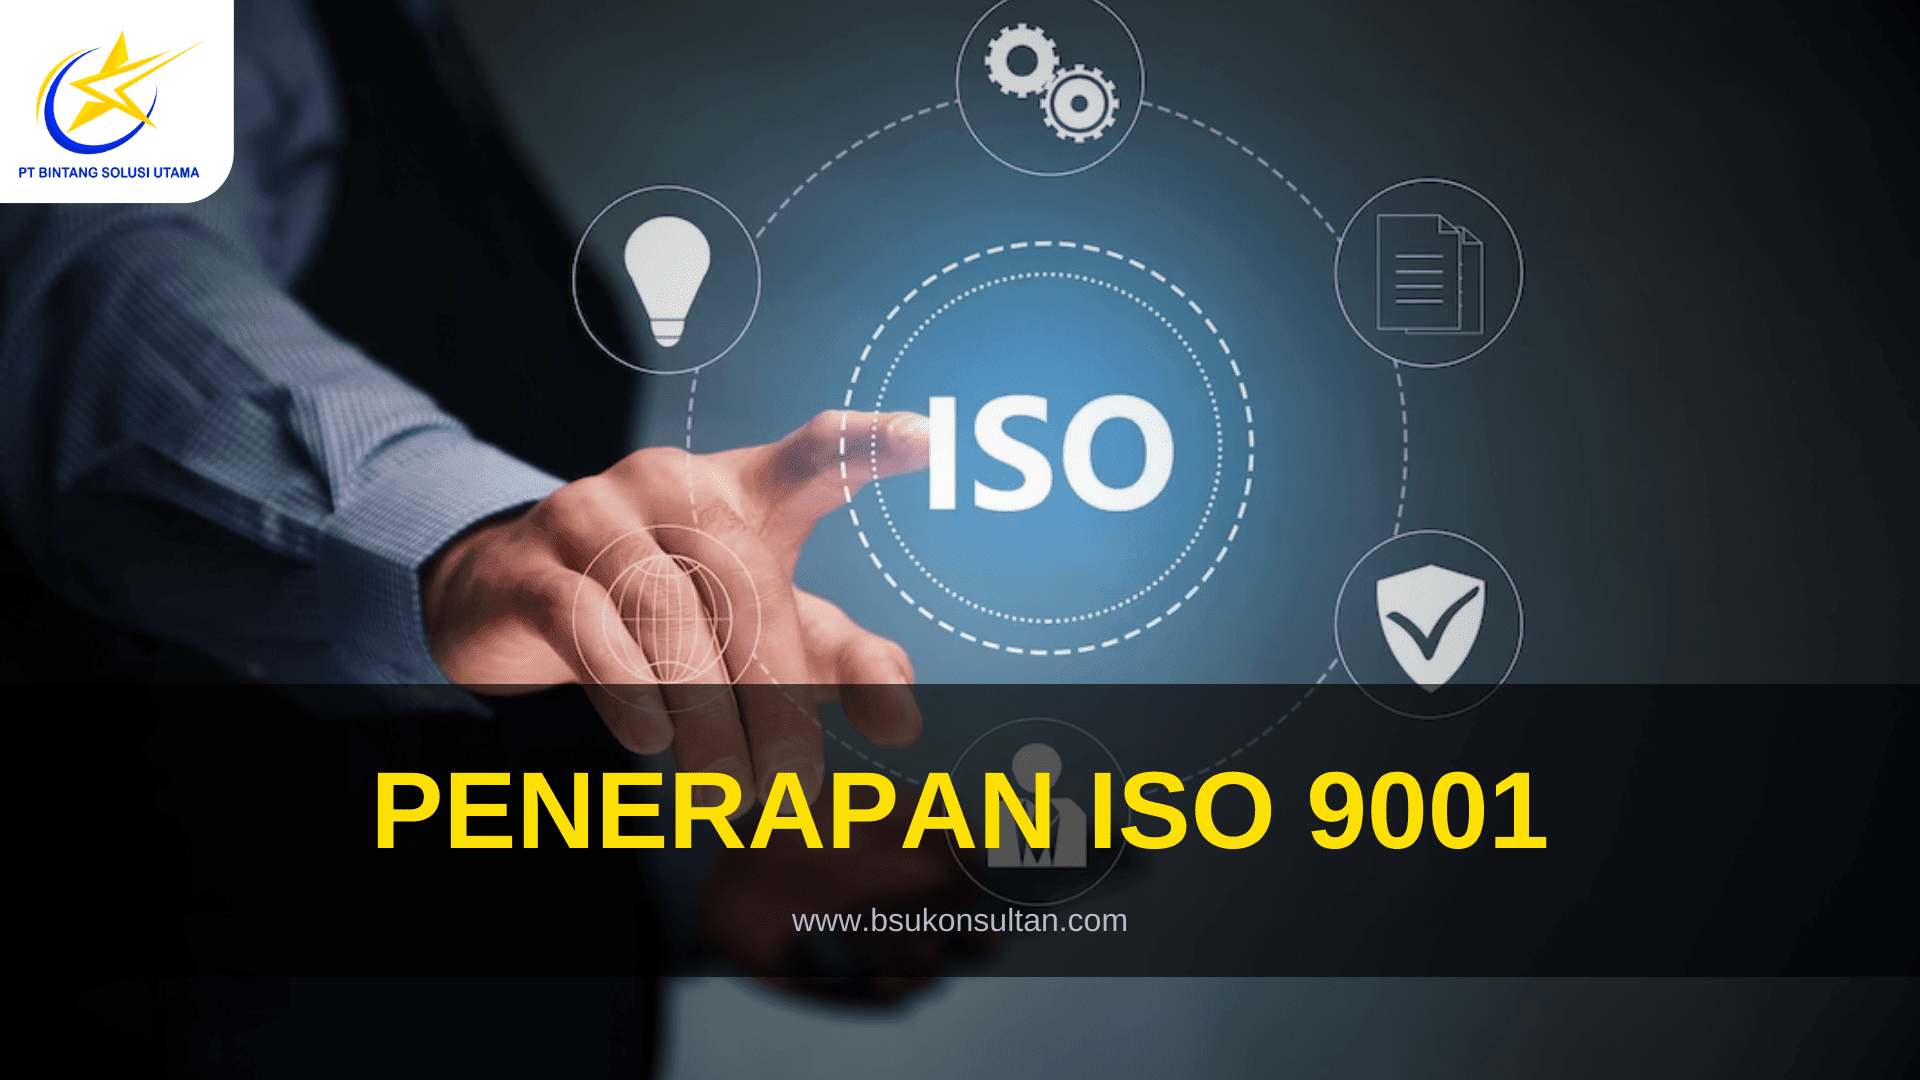 3. Penerapan ISO 9001